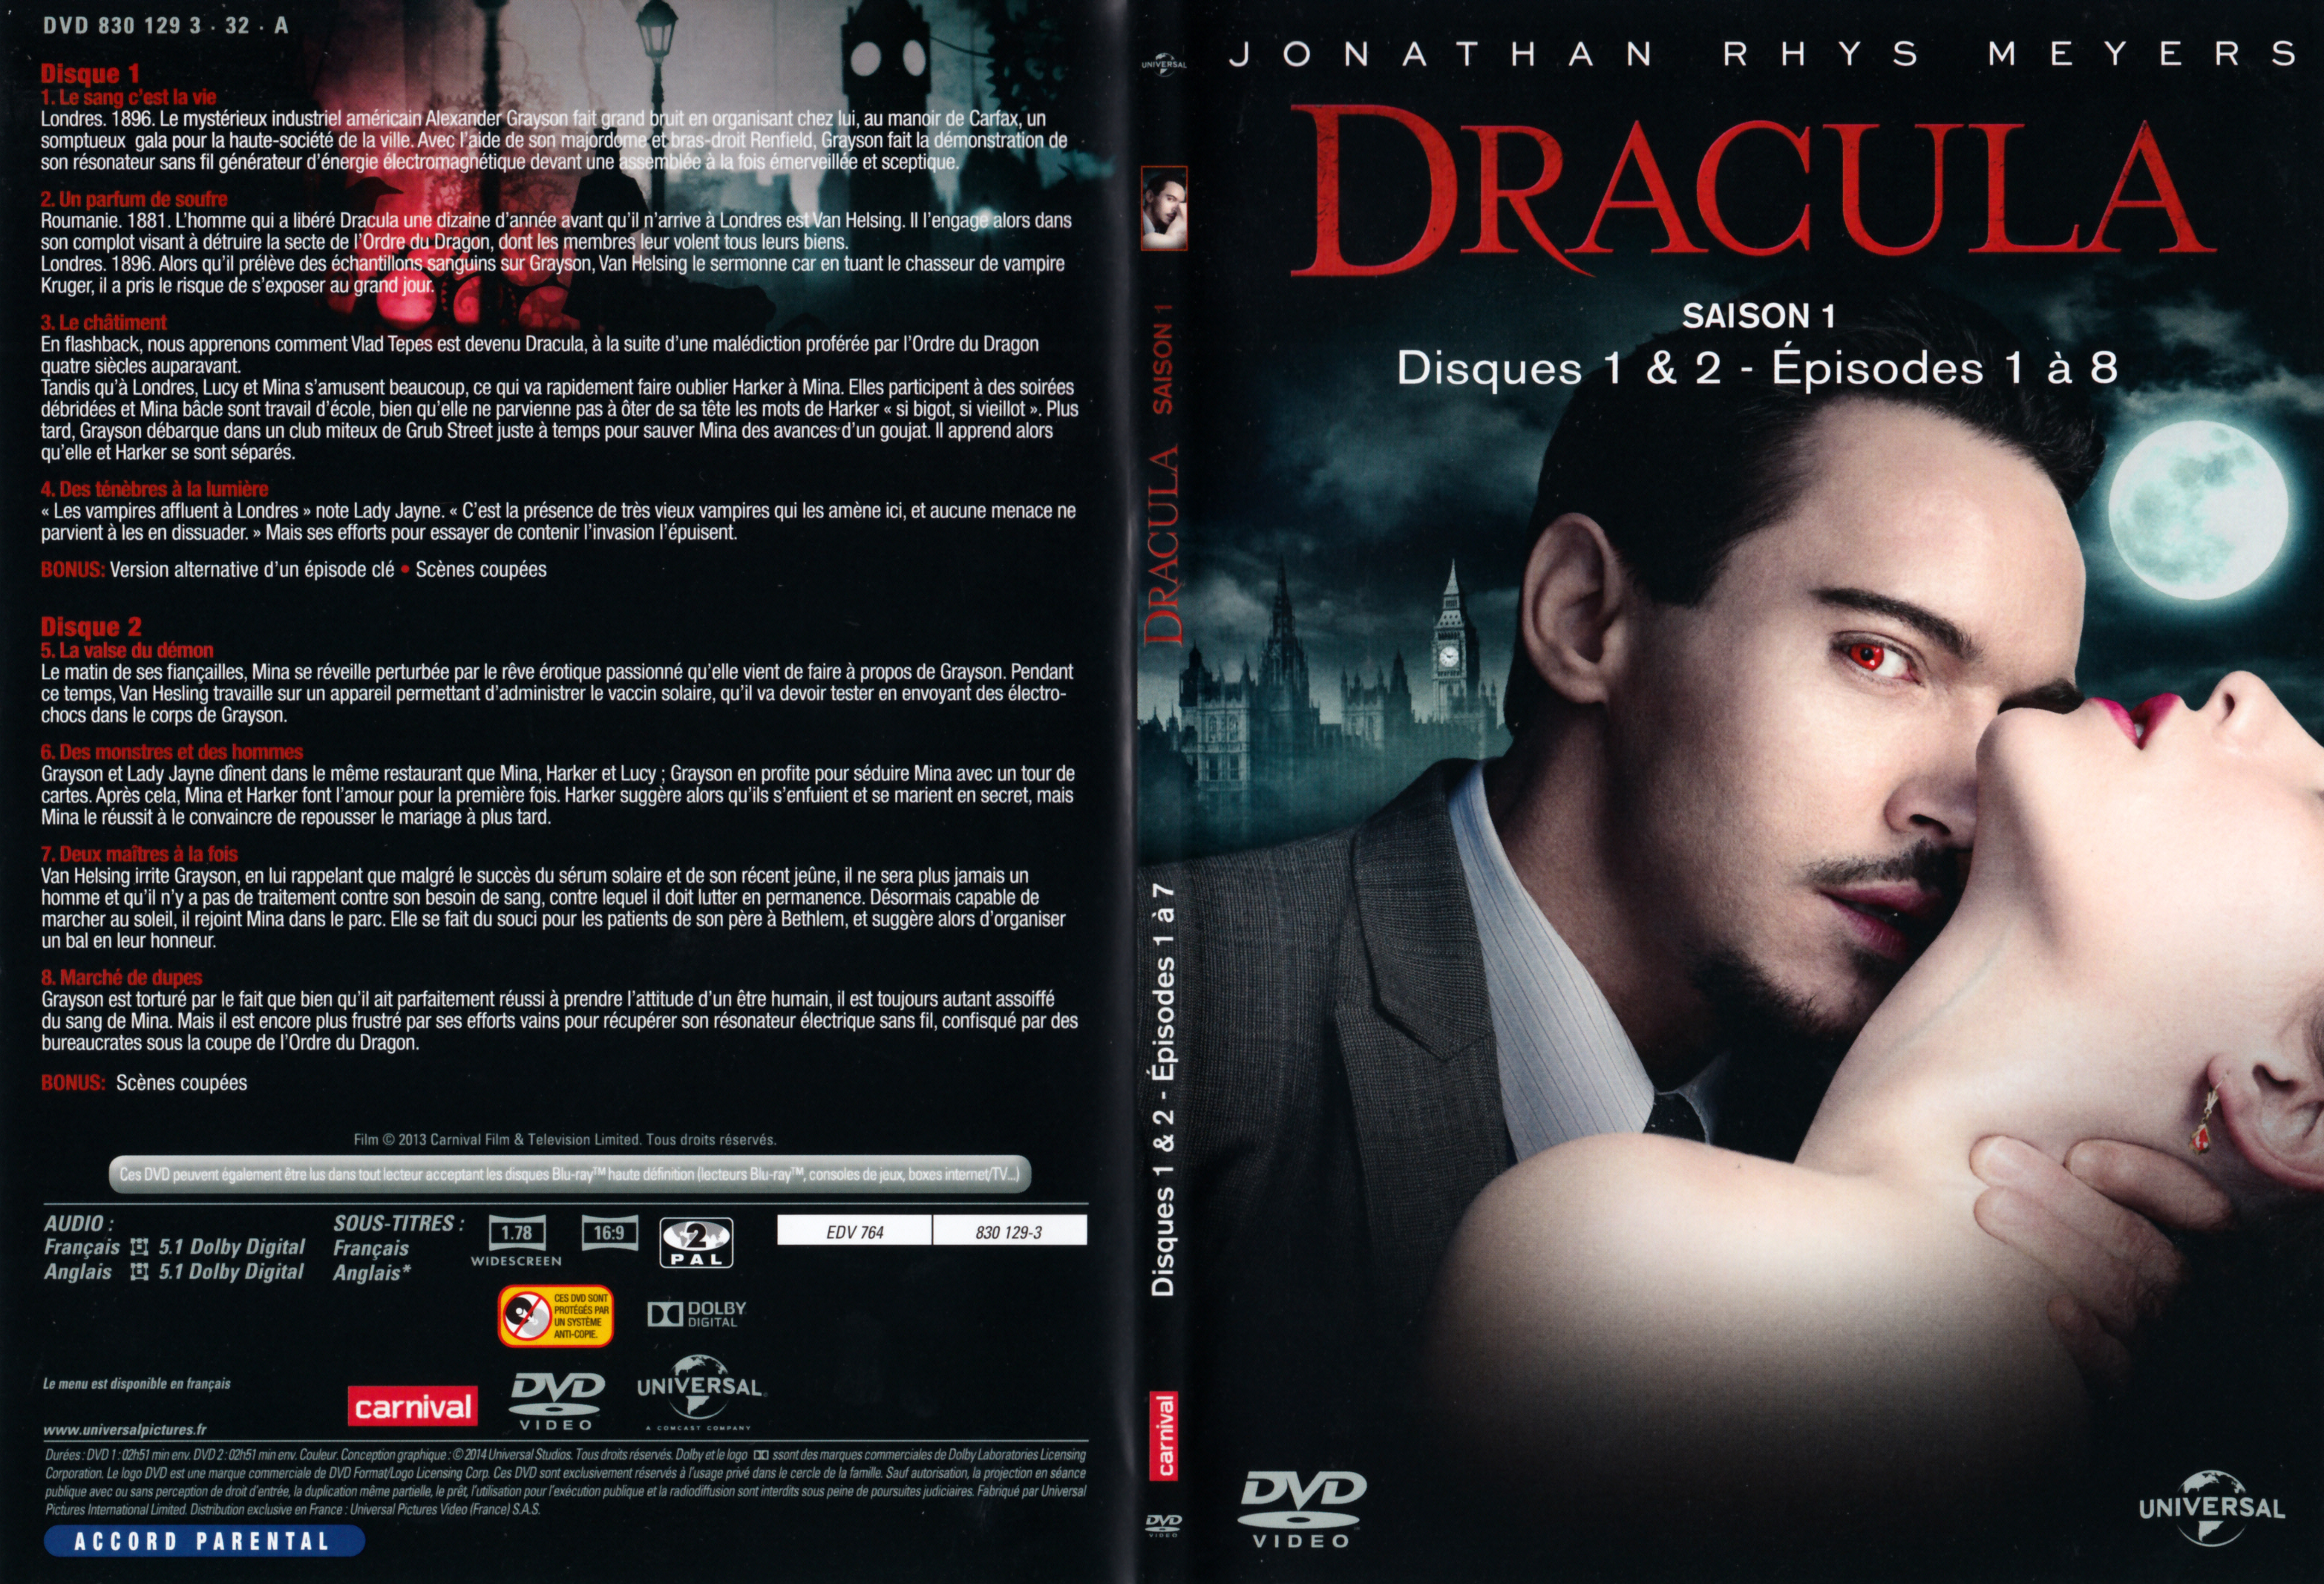 Jaquette DVD Dracula Saison 1 DVD 1